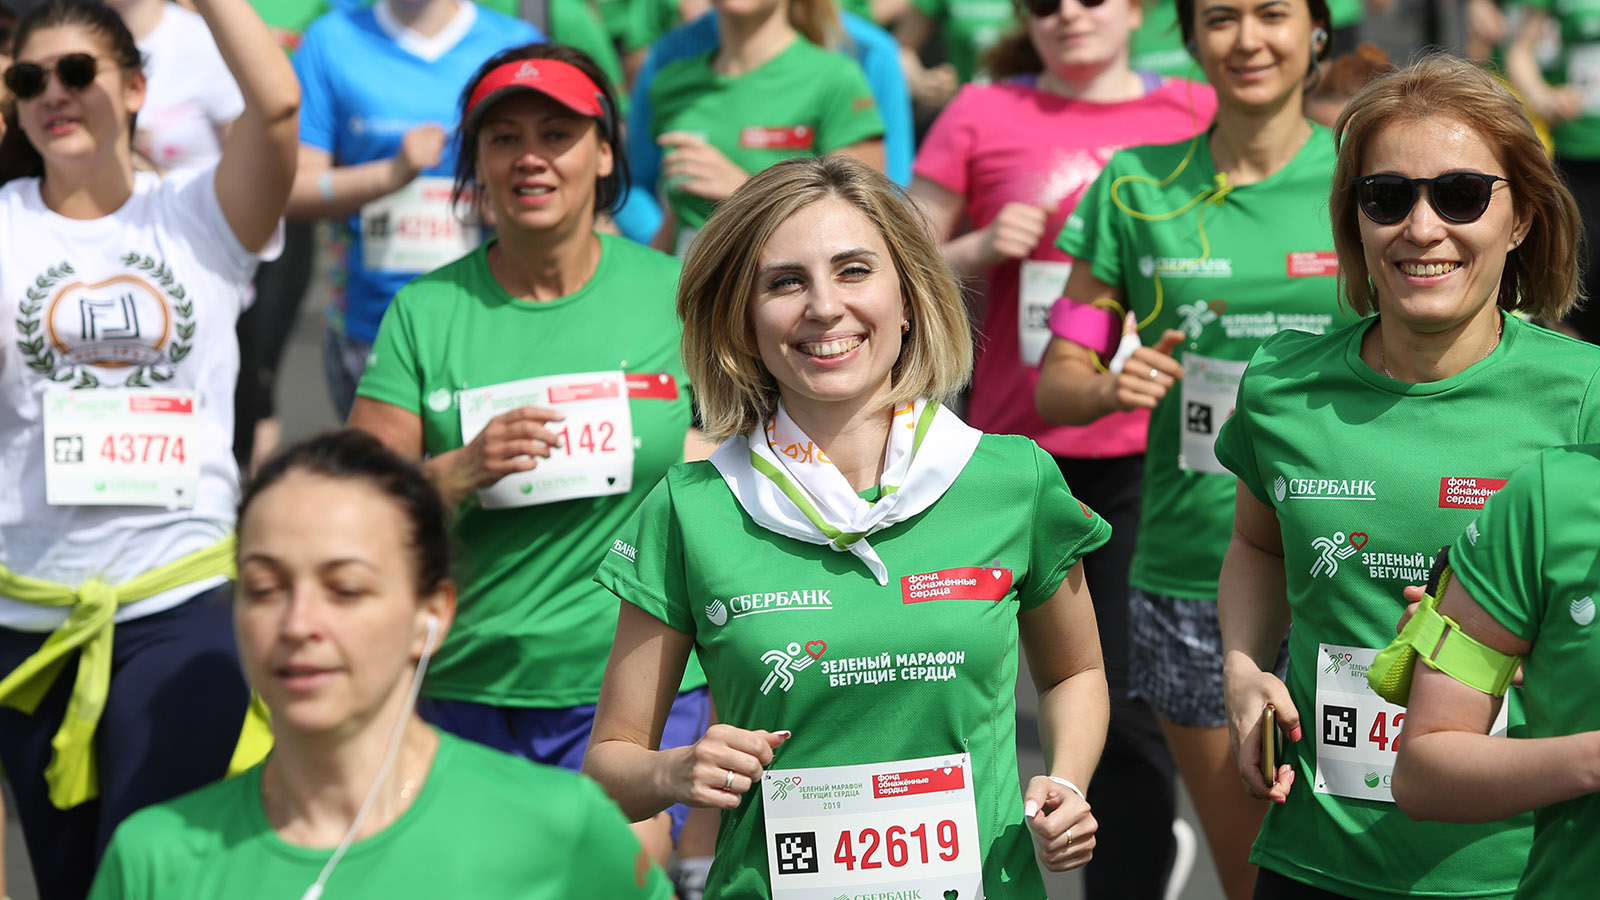 Юбилейный Зеленый марафон и помощь детям в хосписах: социальные проекты недели